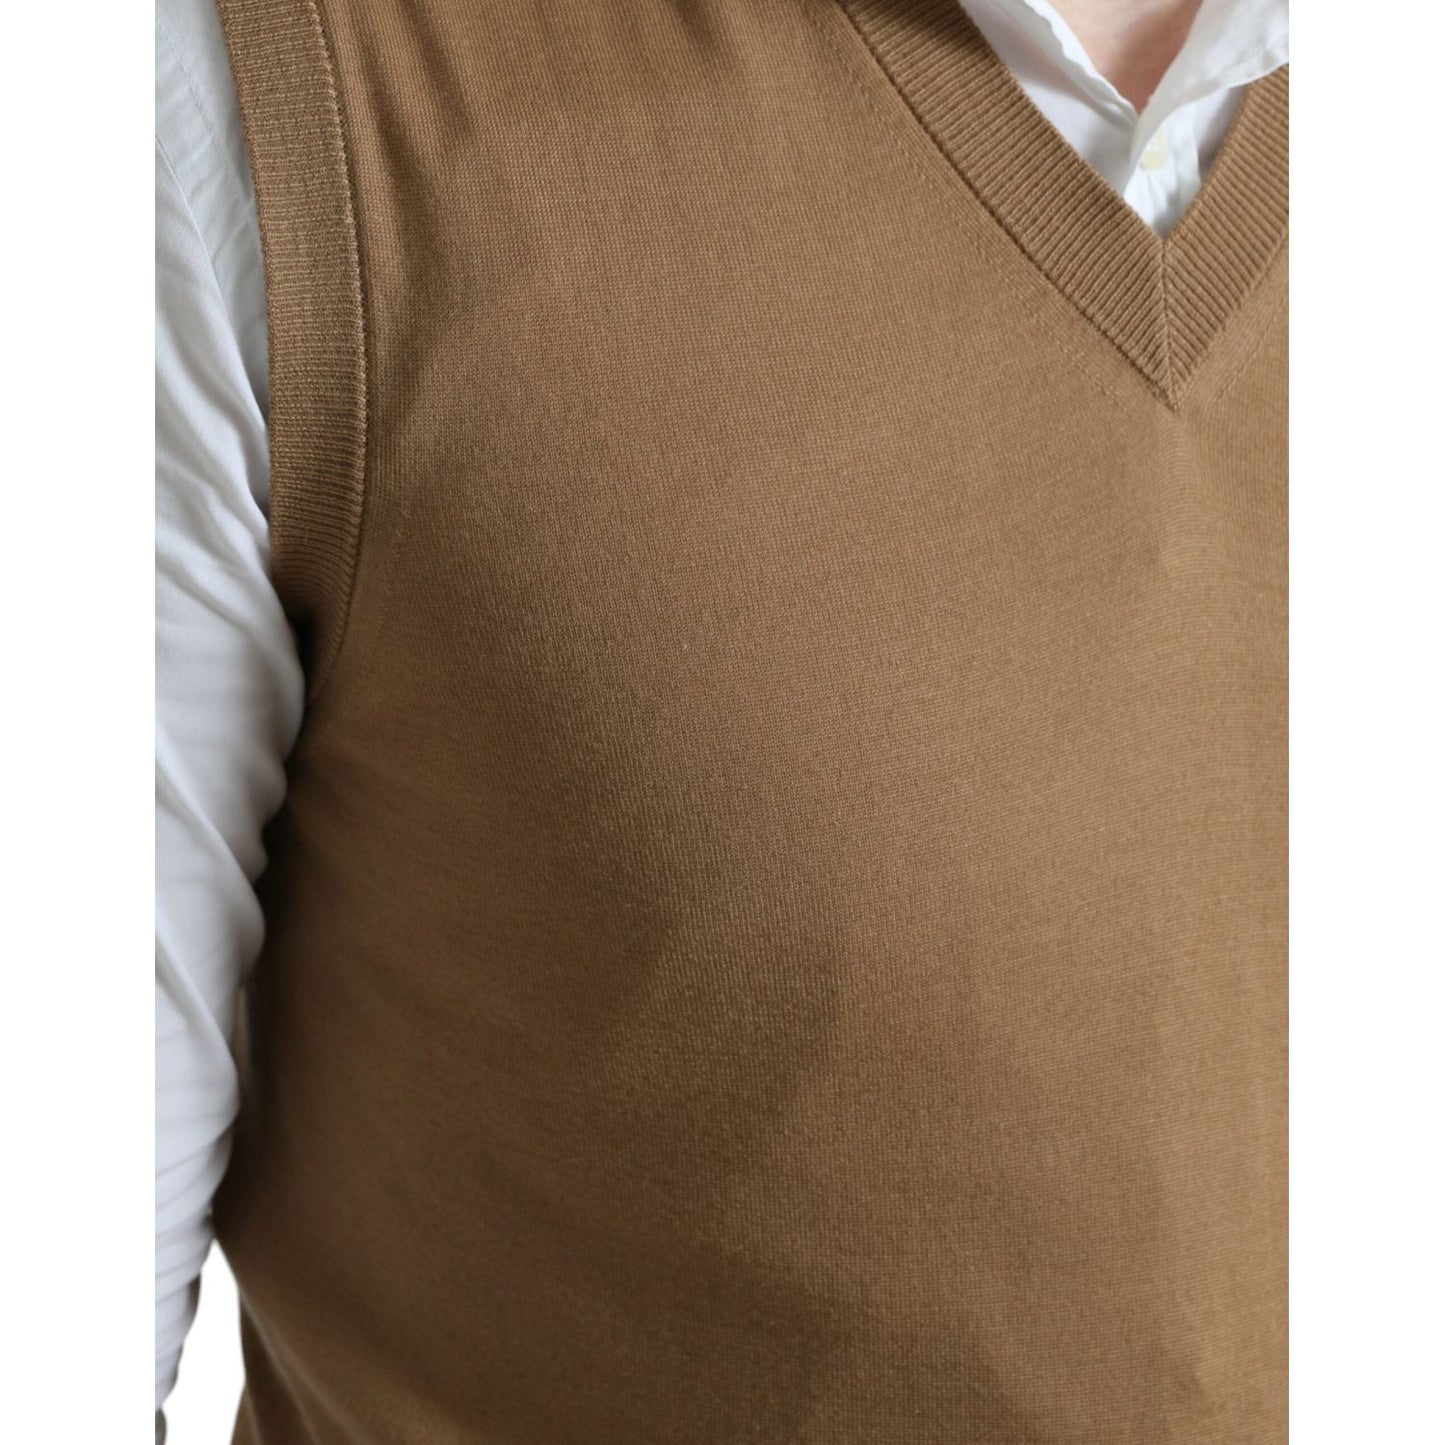 Dolce & Gabbana Elegant Sleeveless V-Neck Wool Sweater brown-wool-sleeveless-pullover-sweater